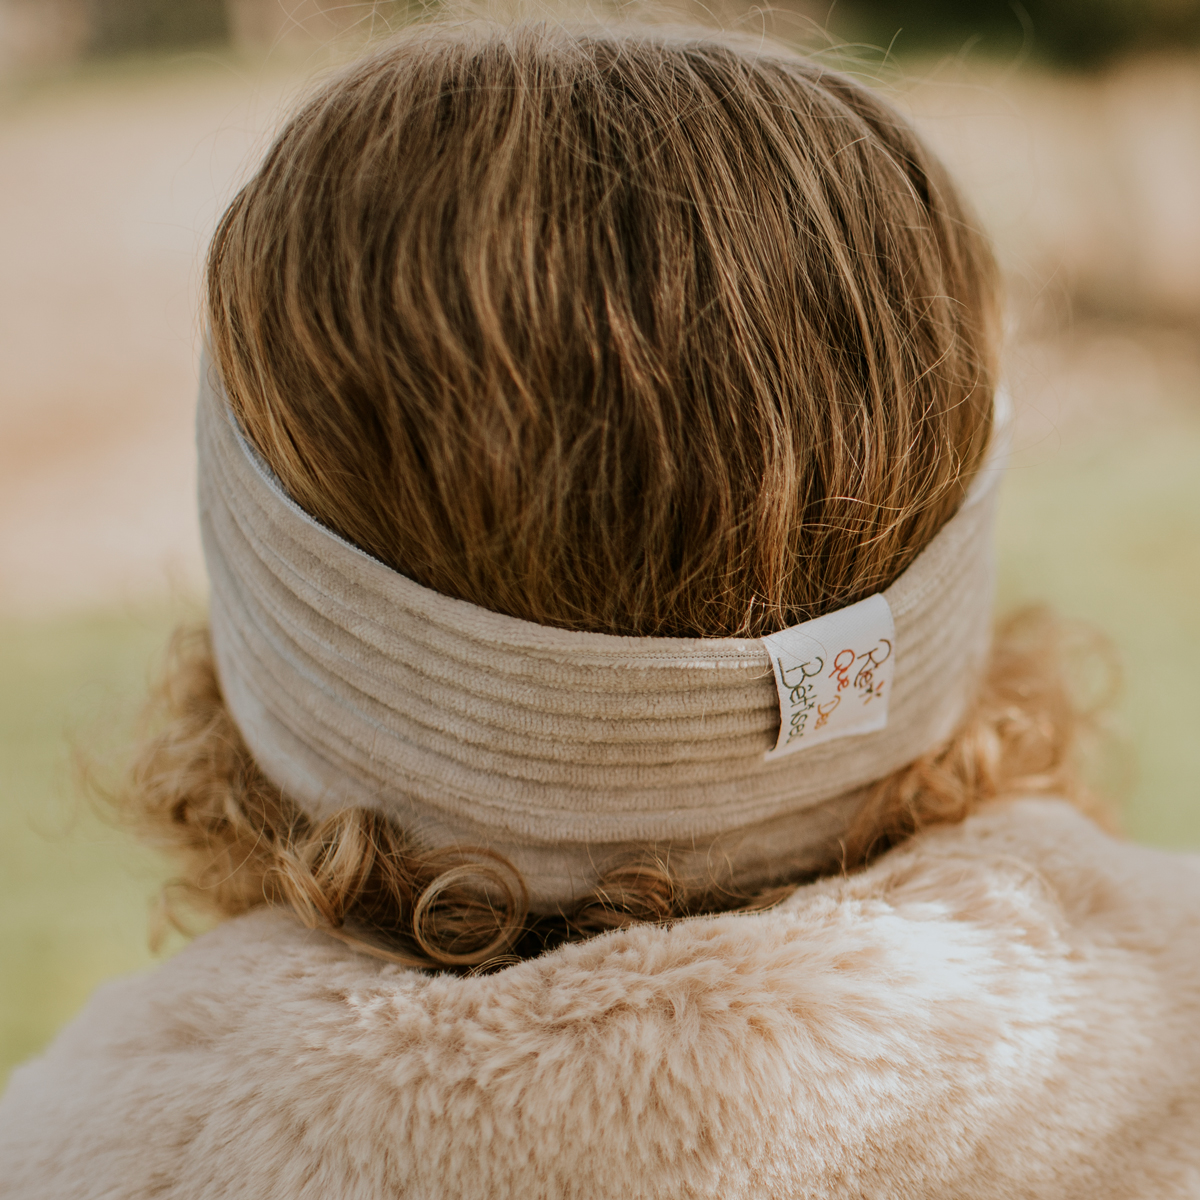 Rien Que Des Bêtises revisite le bandeau velours gris de bébé, chaud, pratique et de qualité. Ce bandeau est fabriqués à la main en France.